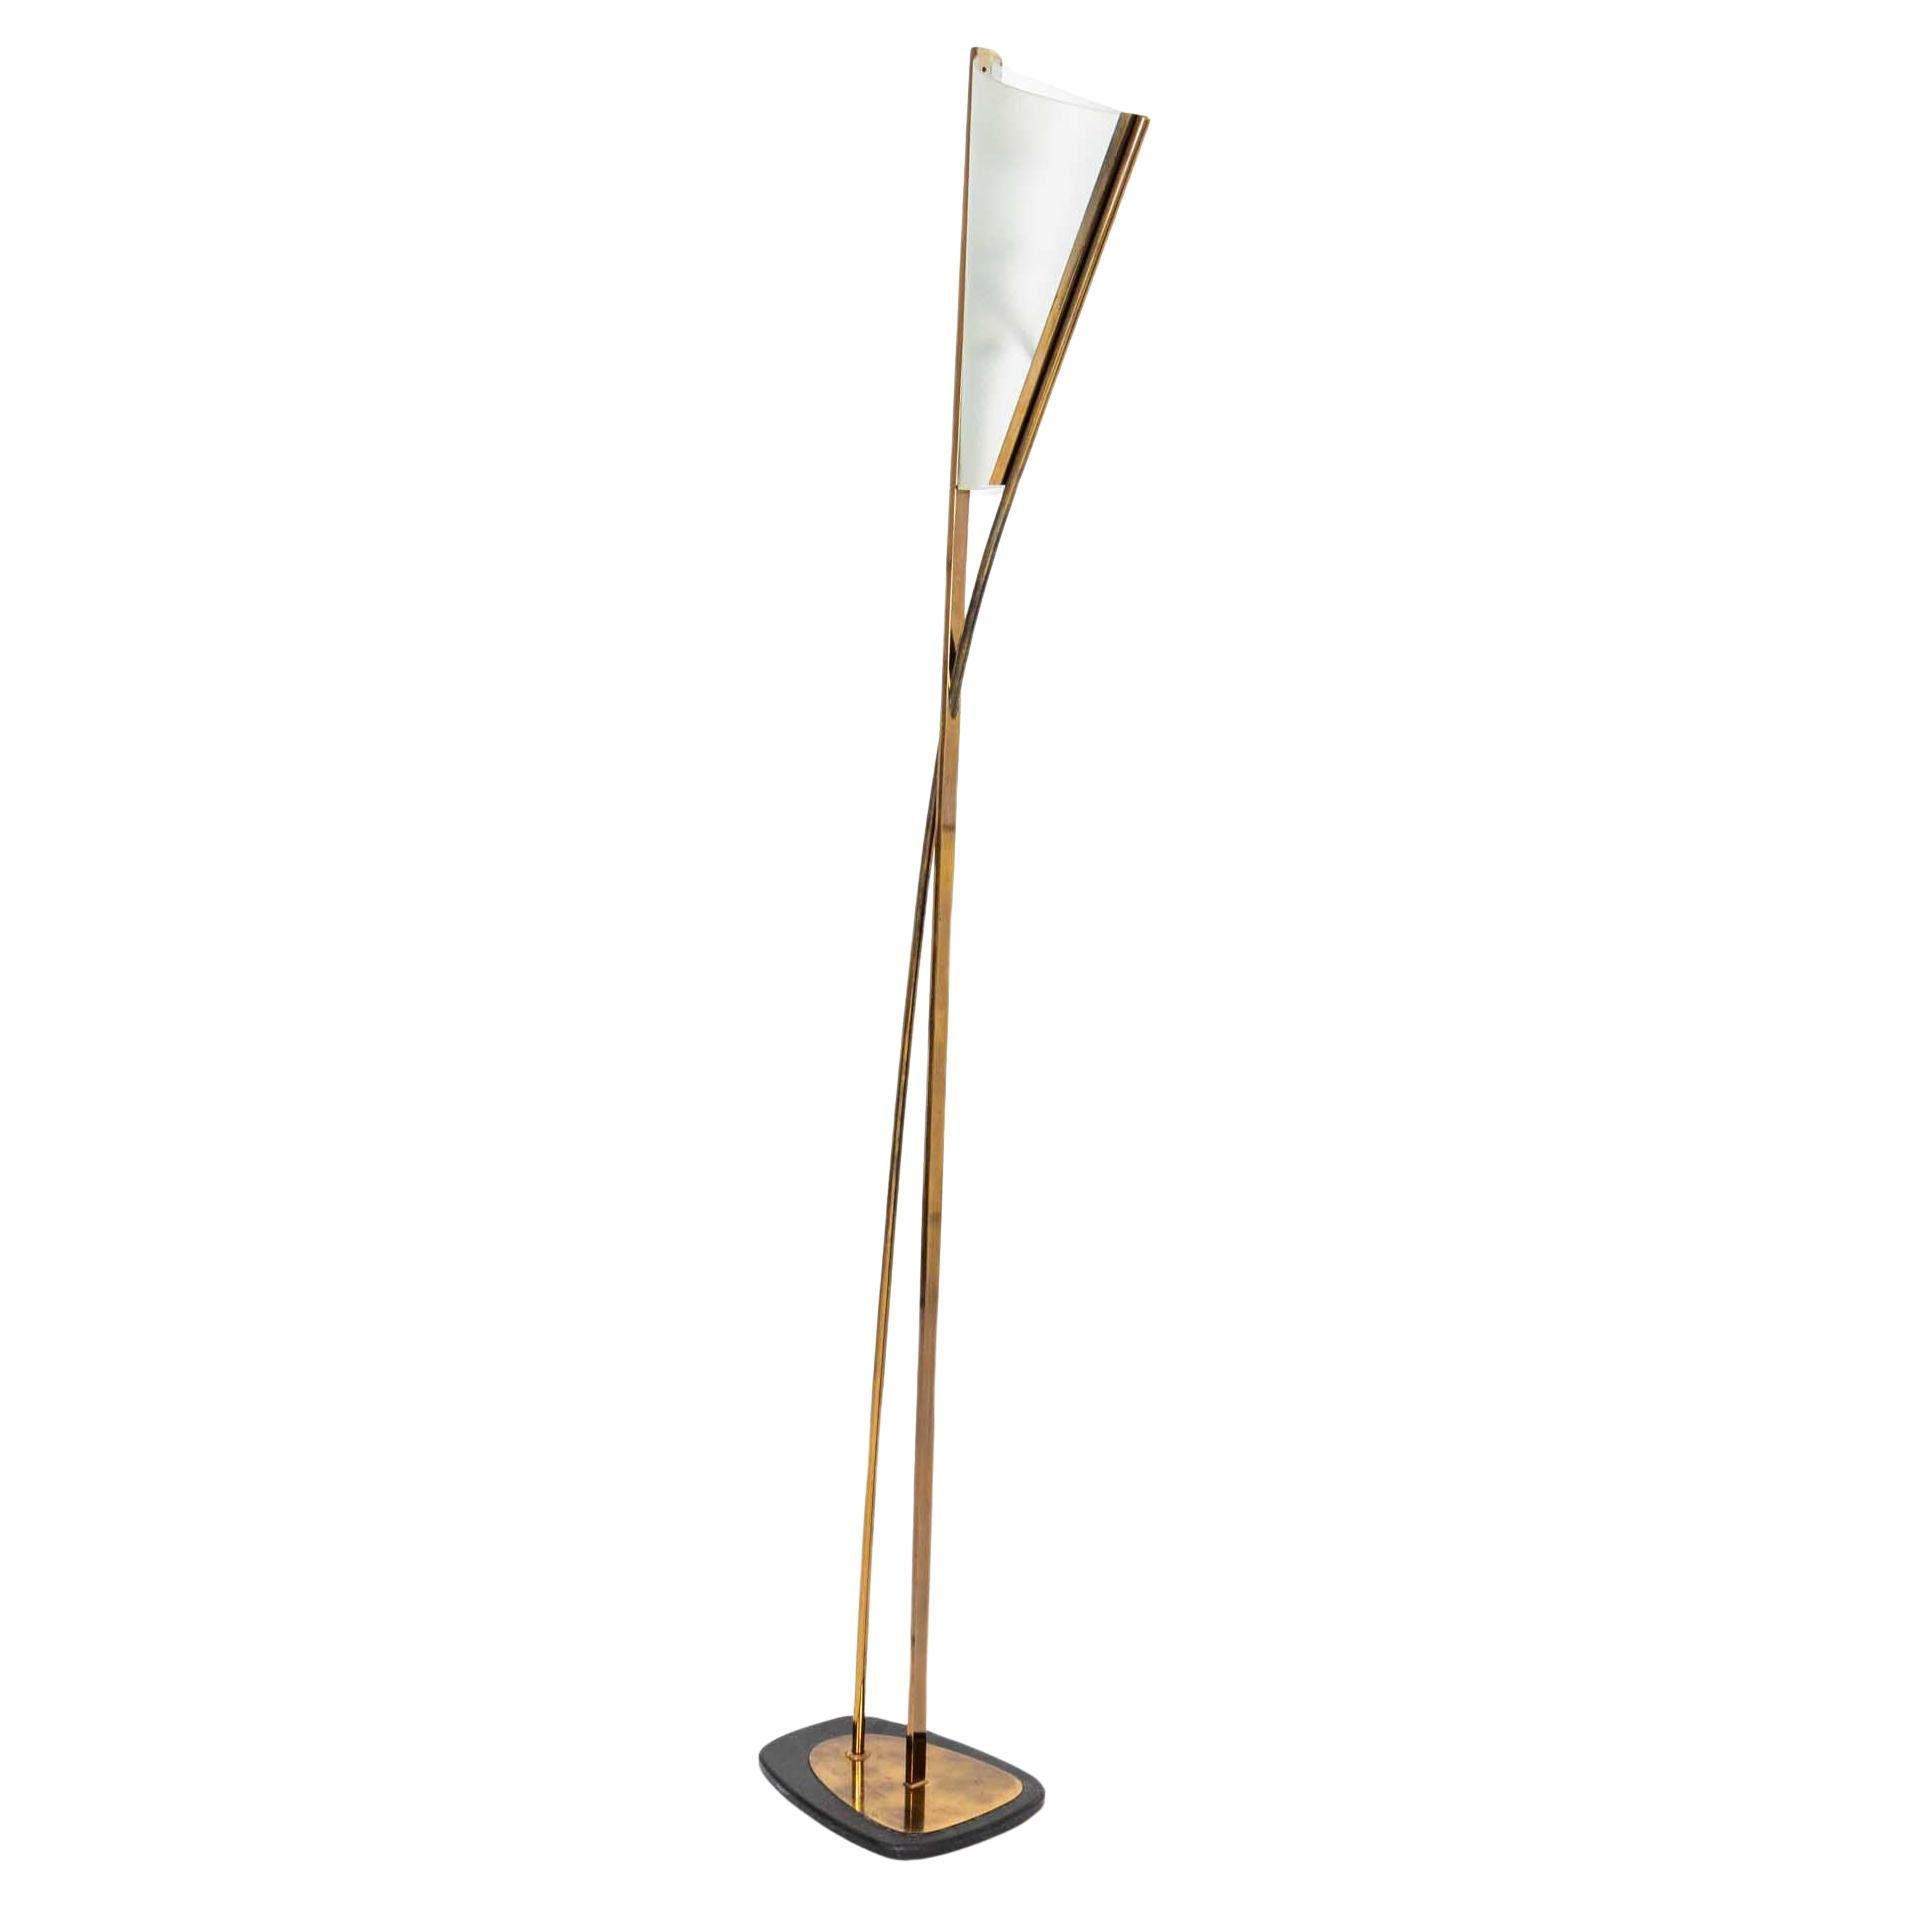 Single Italian Modernist Floor Lamp For Sale